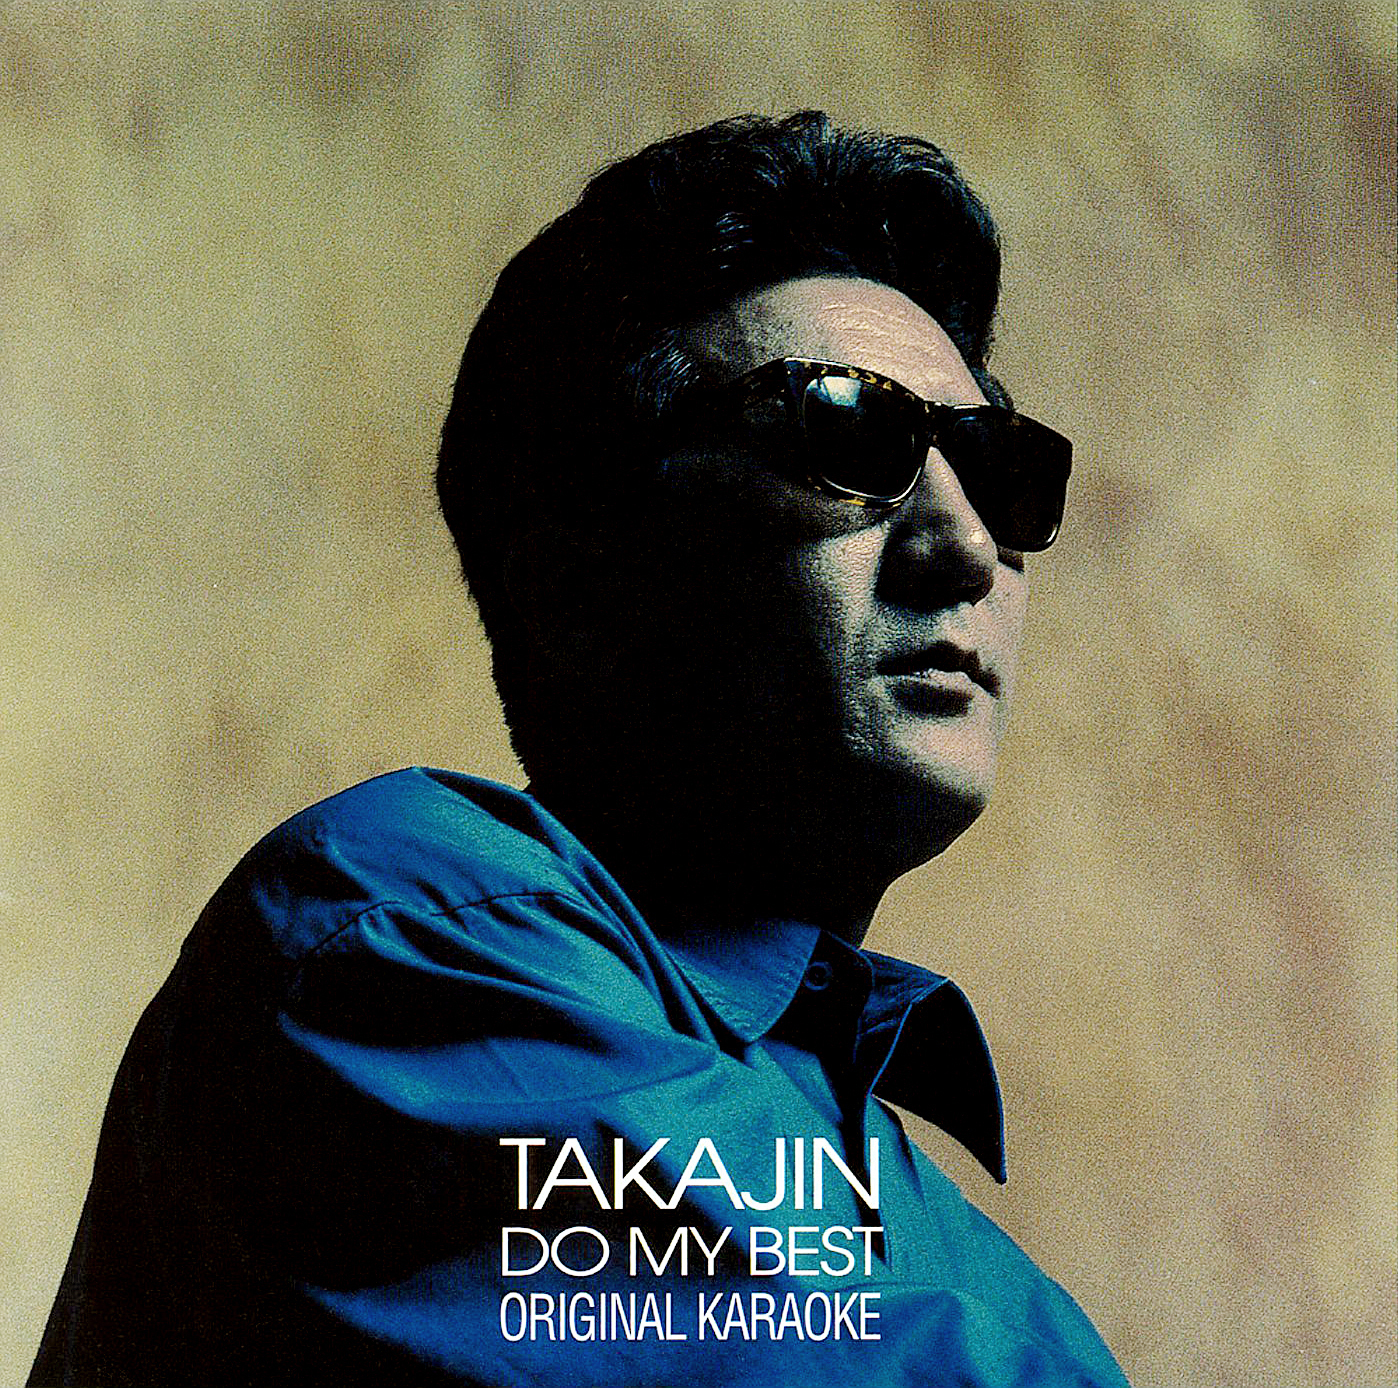 やしきたかじん カラオケ・アルバム『TAKAJIN DO MY BEST オリジナル・カラオケ』(1996年7月25日発売) 高画質CDジャケット画像 (ジャケ写)